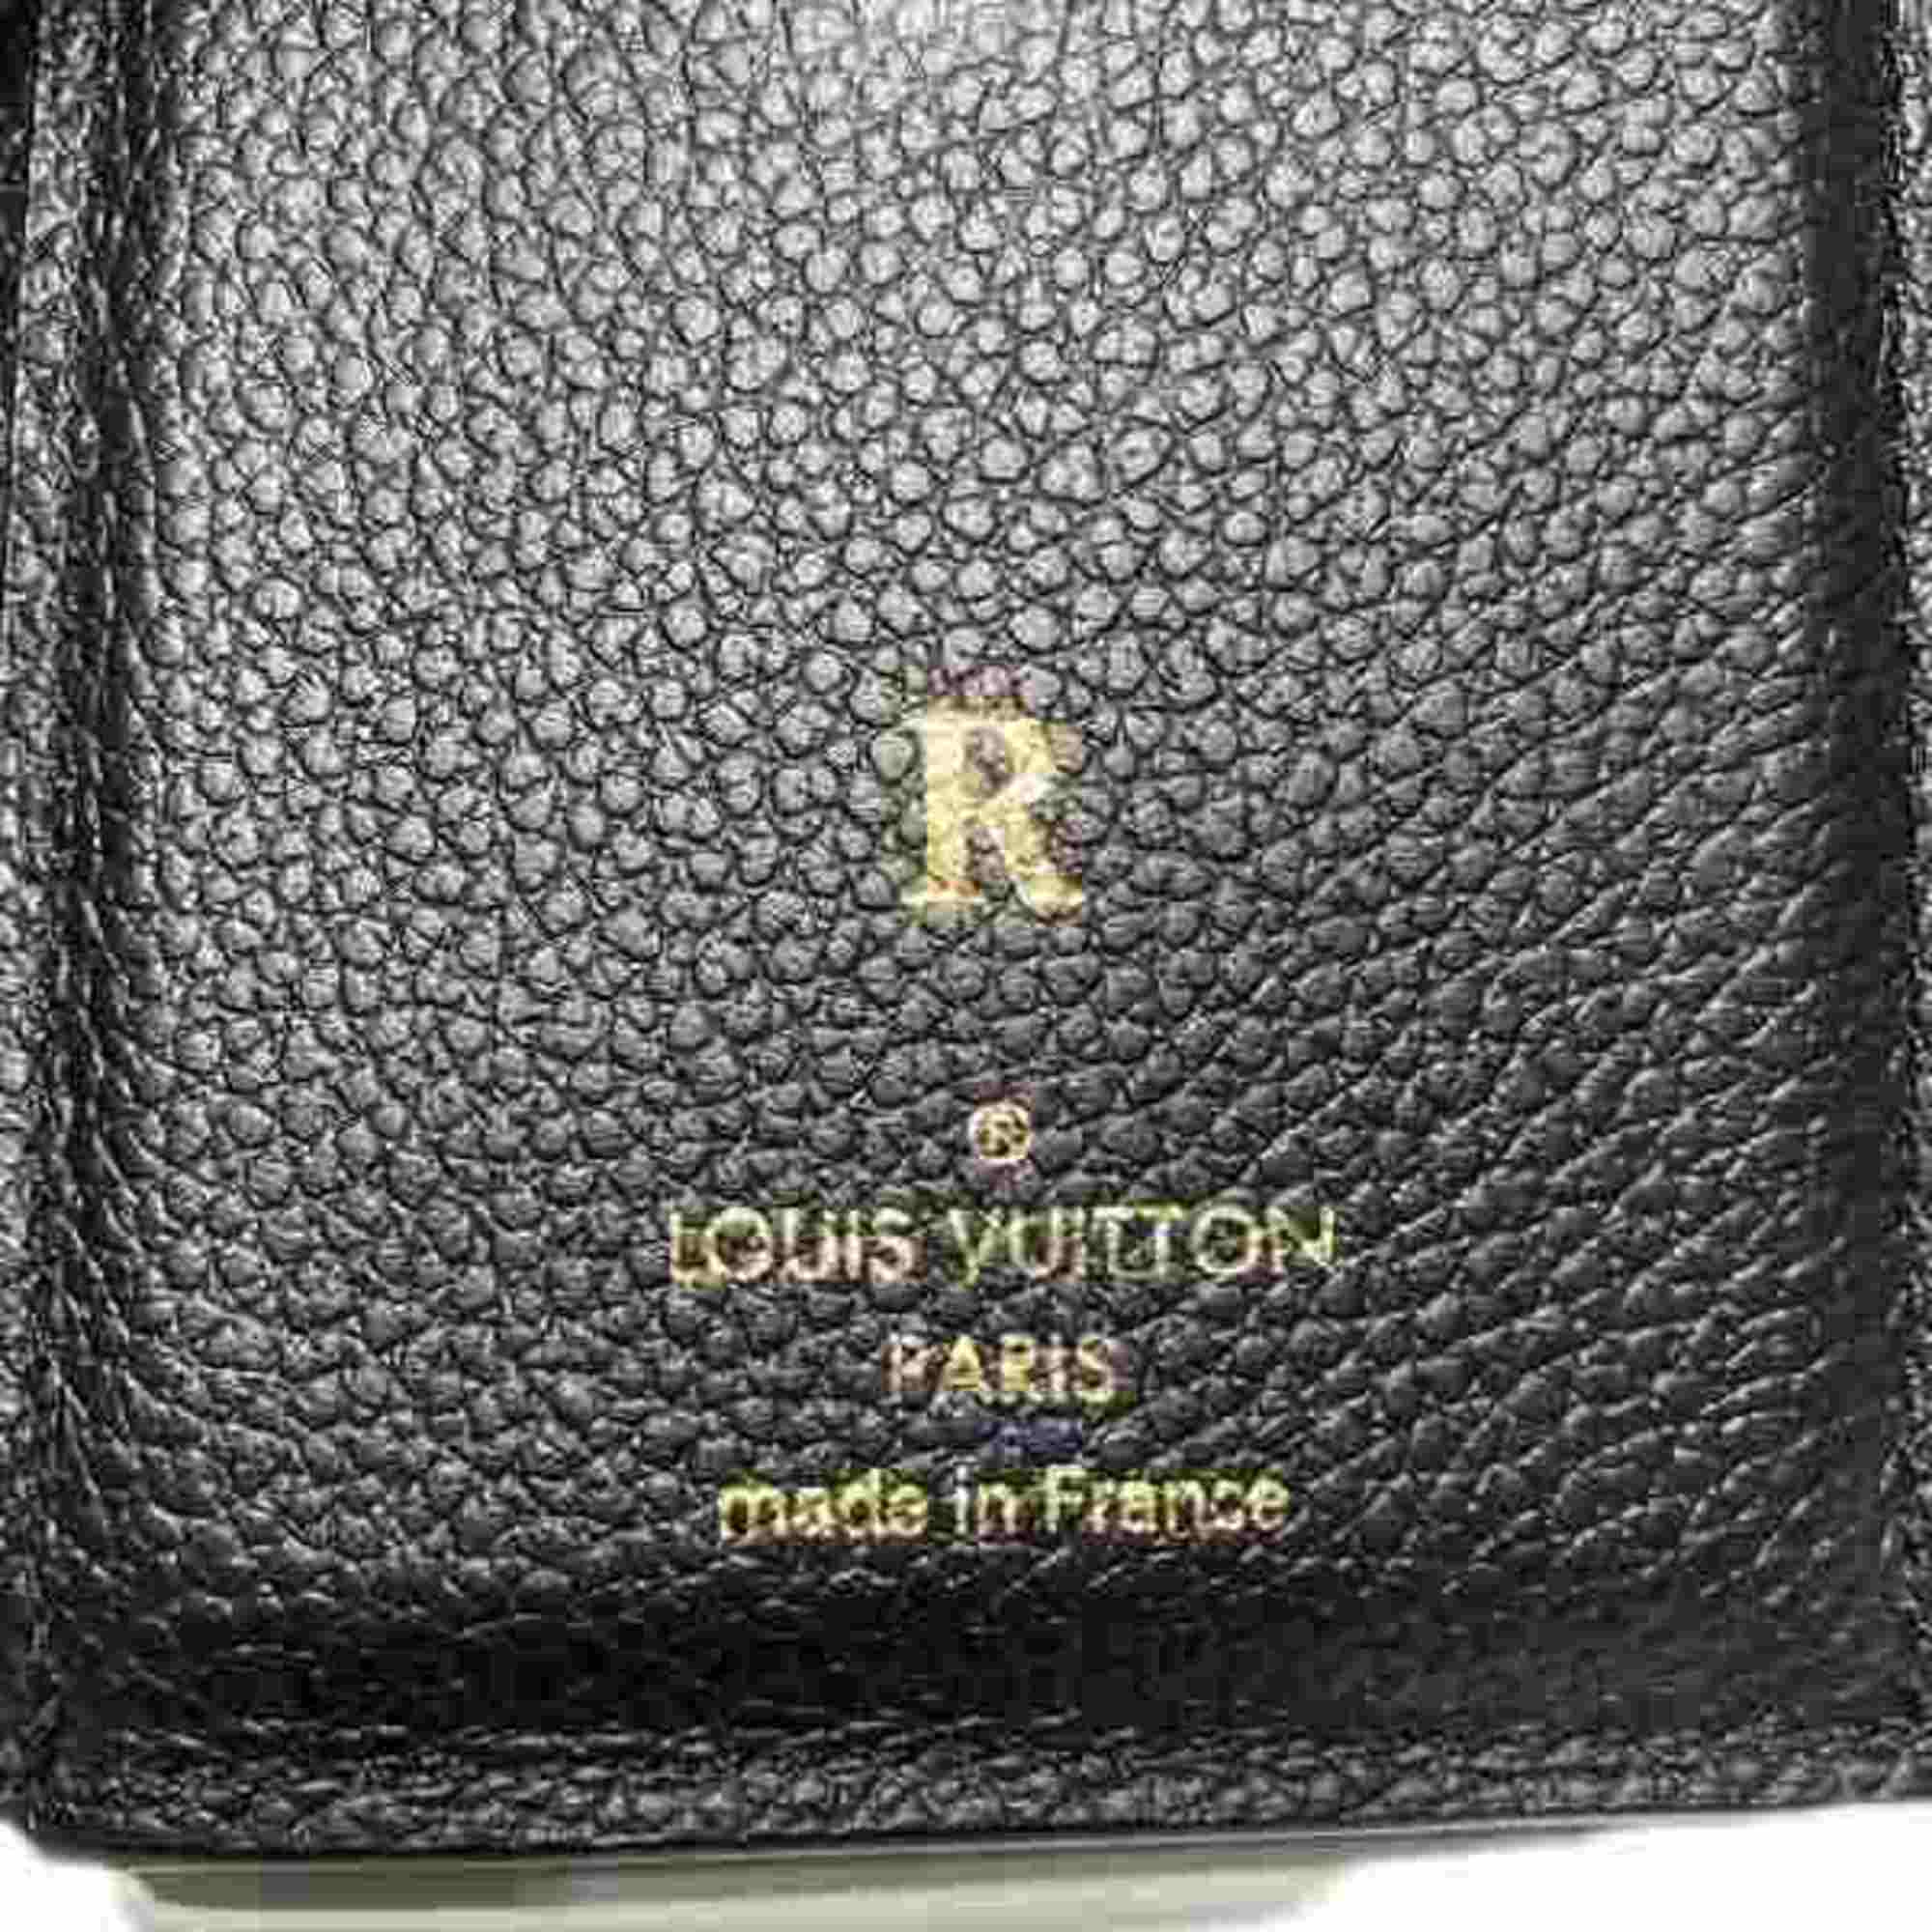 Louis Vuitton Monogram Portefeuille Victorine M64060 Trifold Wallet Men's Women's